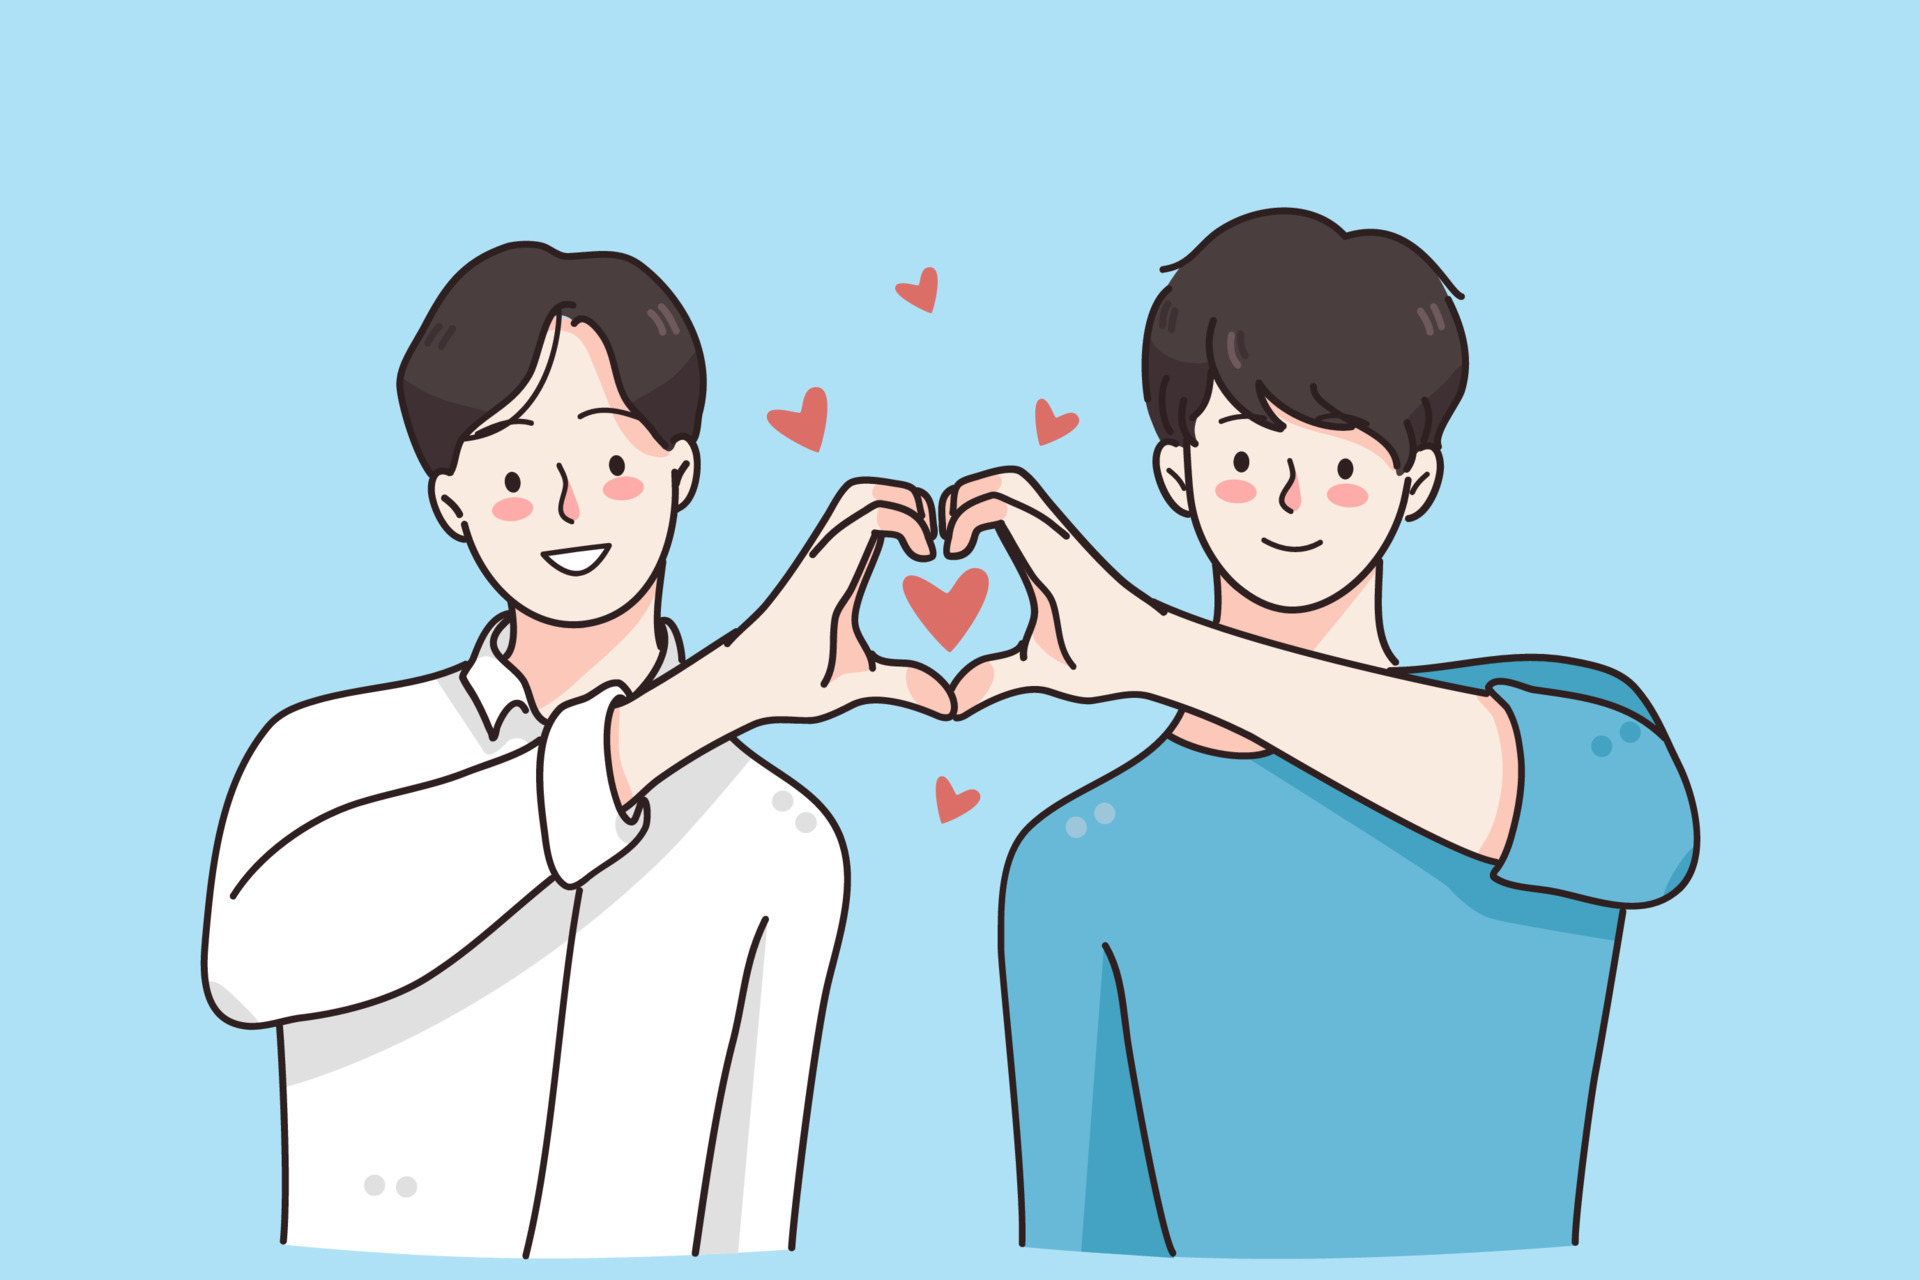 pareja gay, un concepto de amor de género. felices sonrientes hombres  jóvenes personajes de dibujos animados amantes haciendo forma de corazón  con sus manos y dedos en la ilustración de vector de